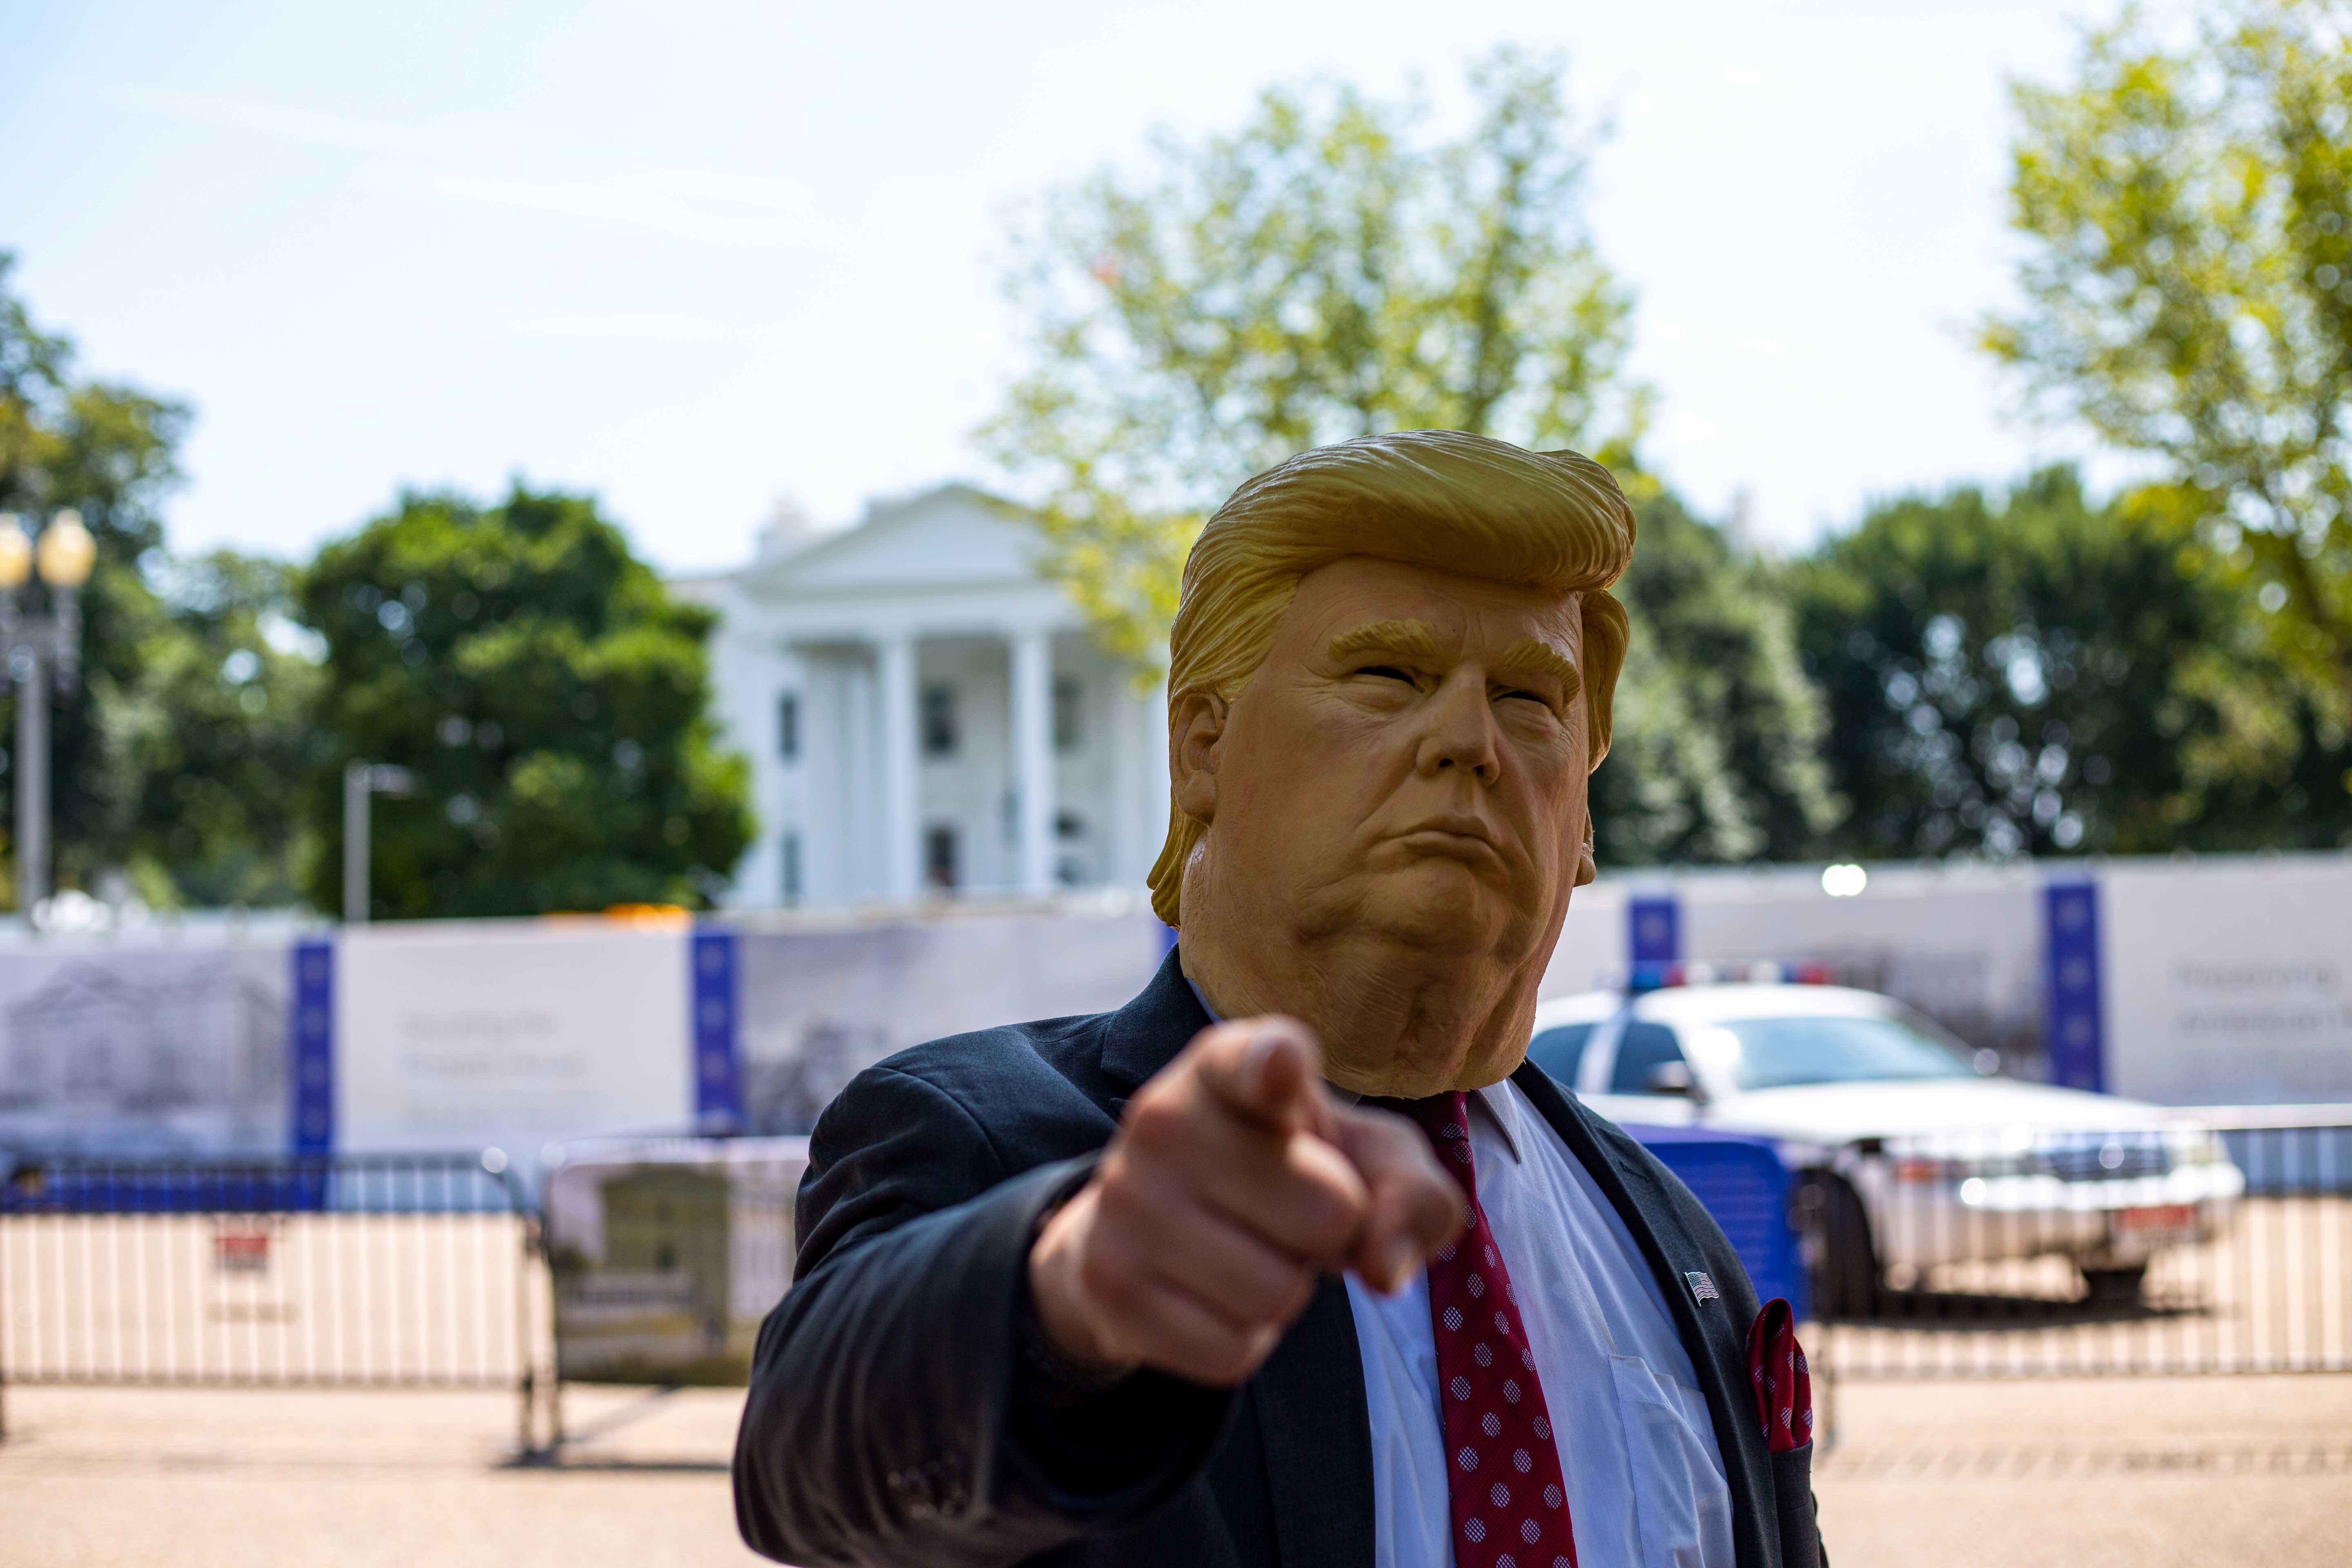 Seorang laki-laki mengenakan topeng menyerupai Presiden Amerika Serikat, Donald Trump. (Foto:Unsplash.com)